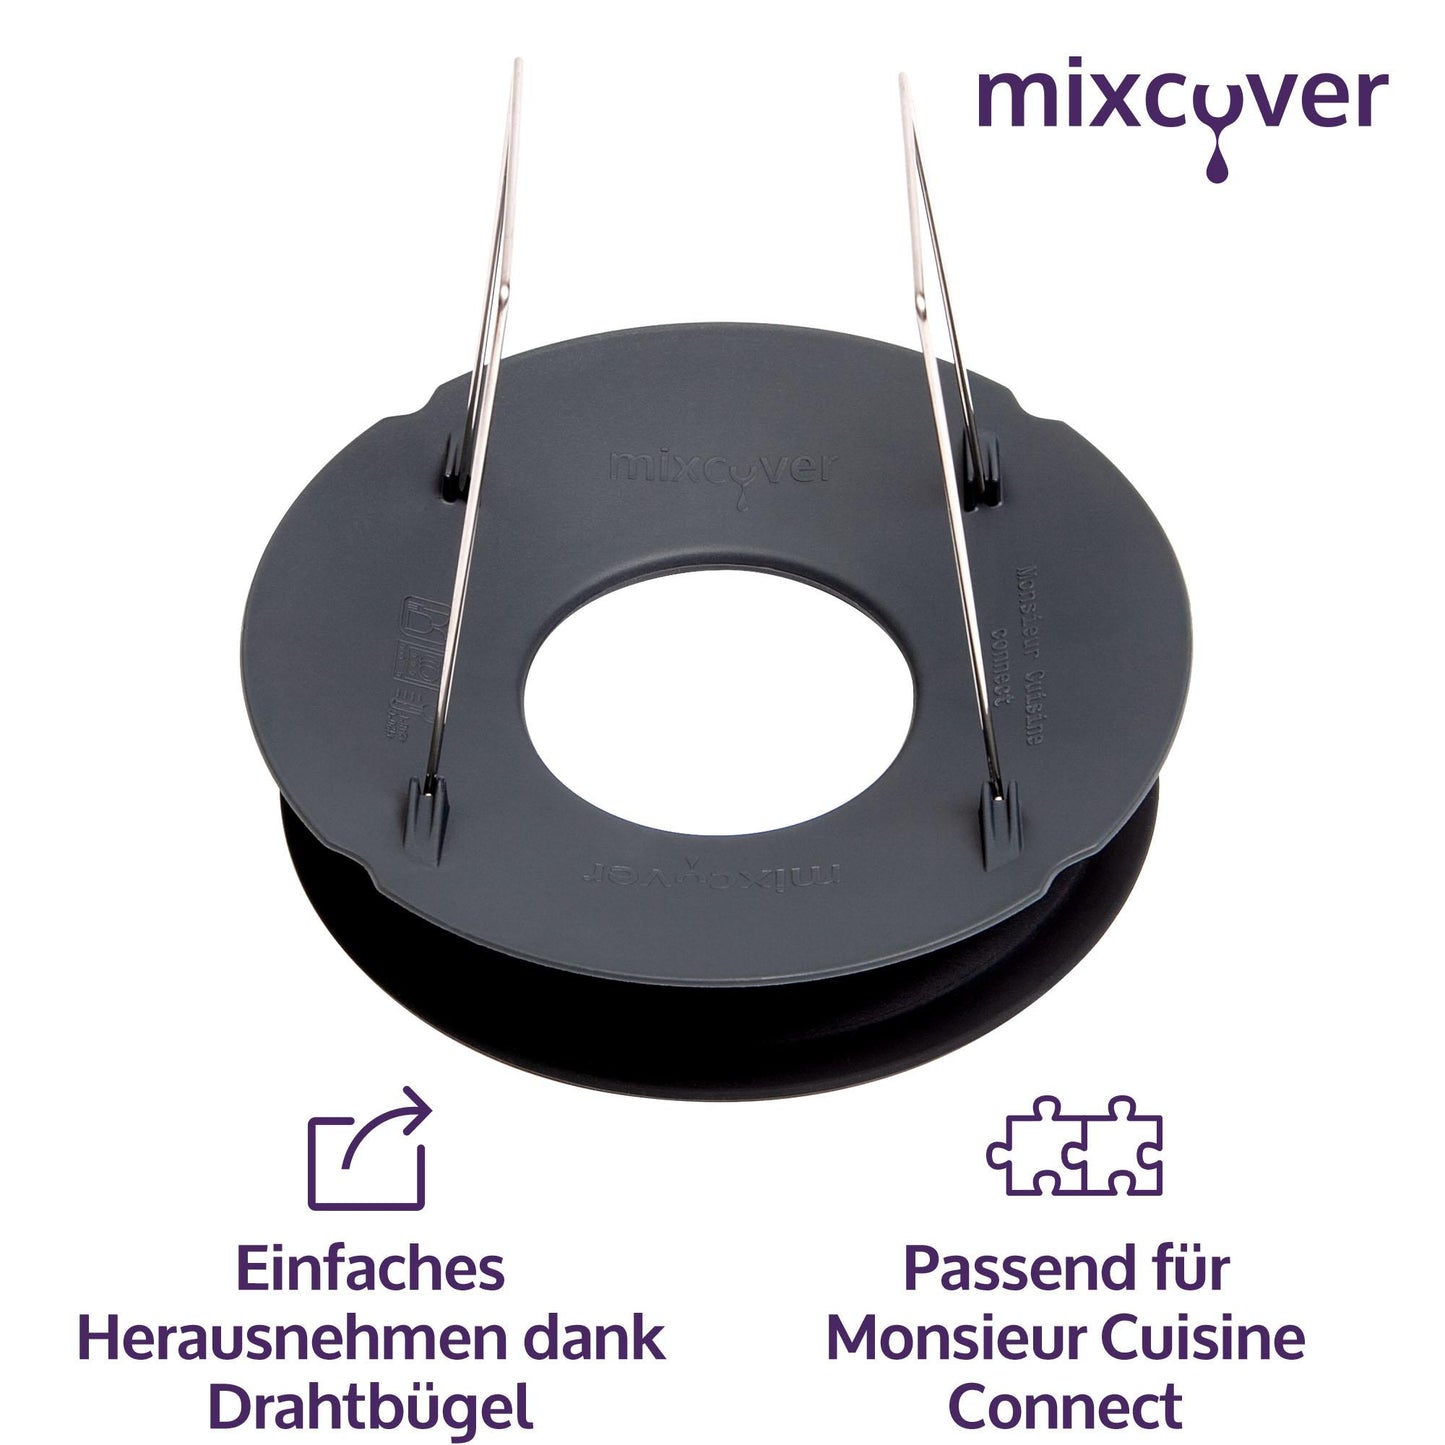 B-Ware: mixcover Mixtopf Verkleinerung für Monsieur Cuisine Smart und Monsieur Cuisine Connect MCC Häcksel Helfer, Pürieren